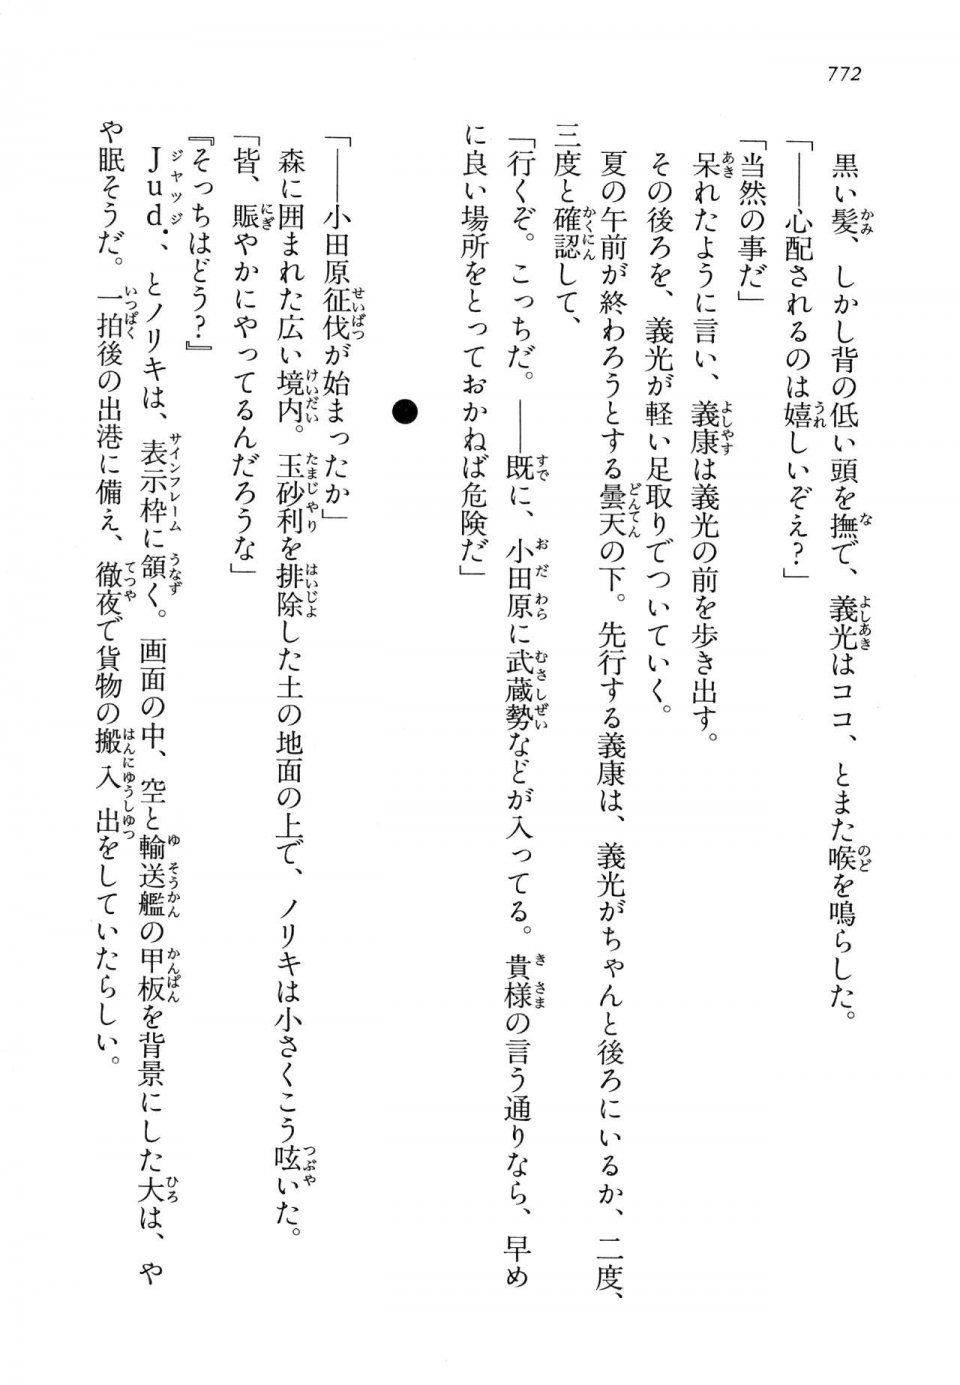 Kyoukai Senjou no Horizon LN Vol 14(6B) - Photo #772